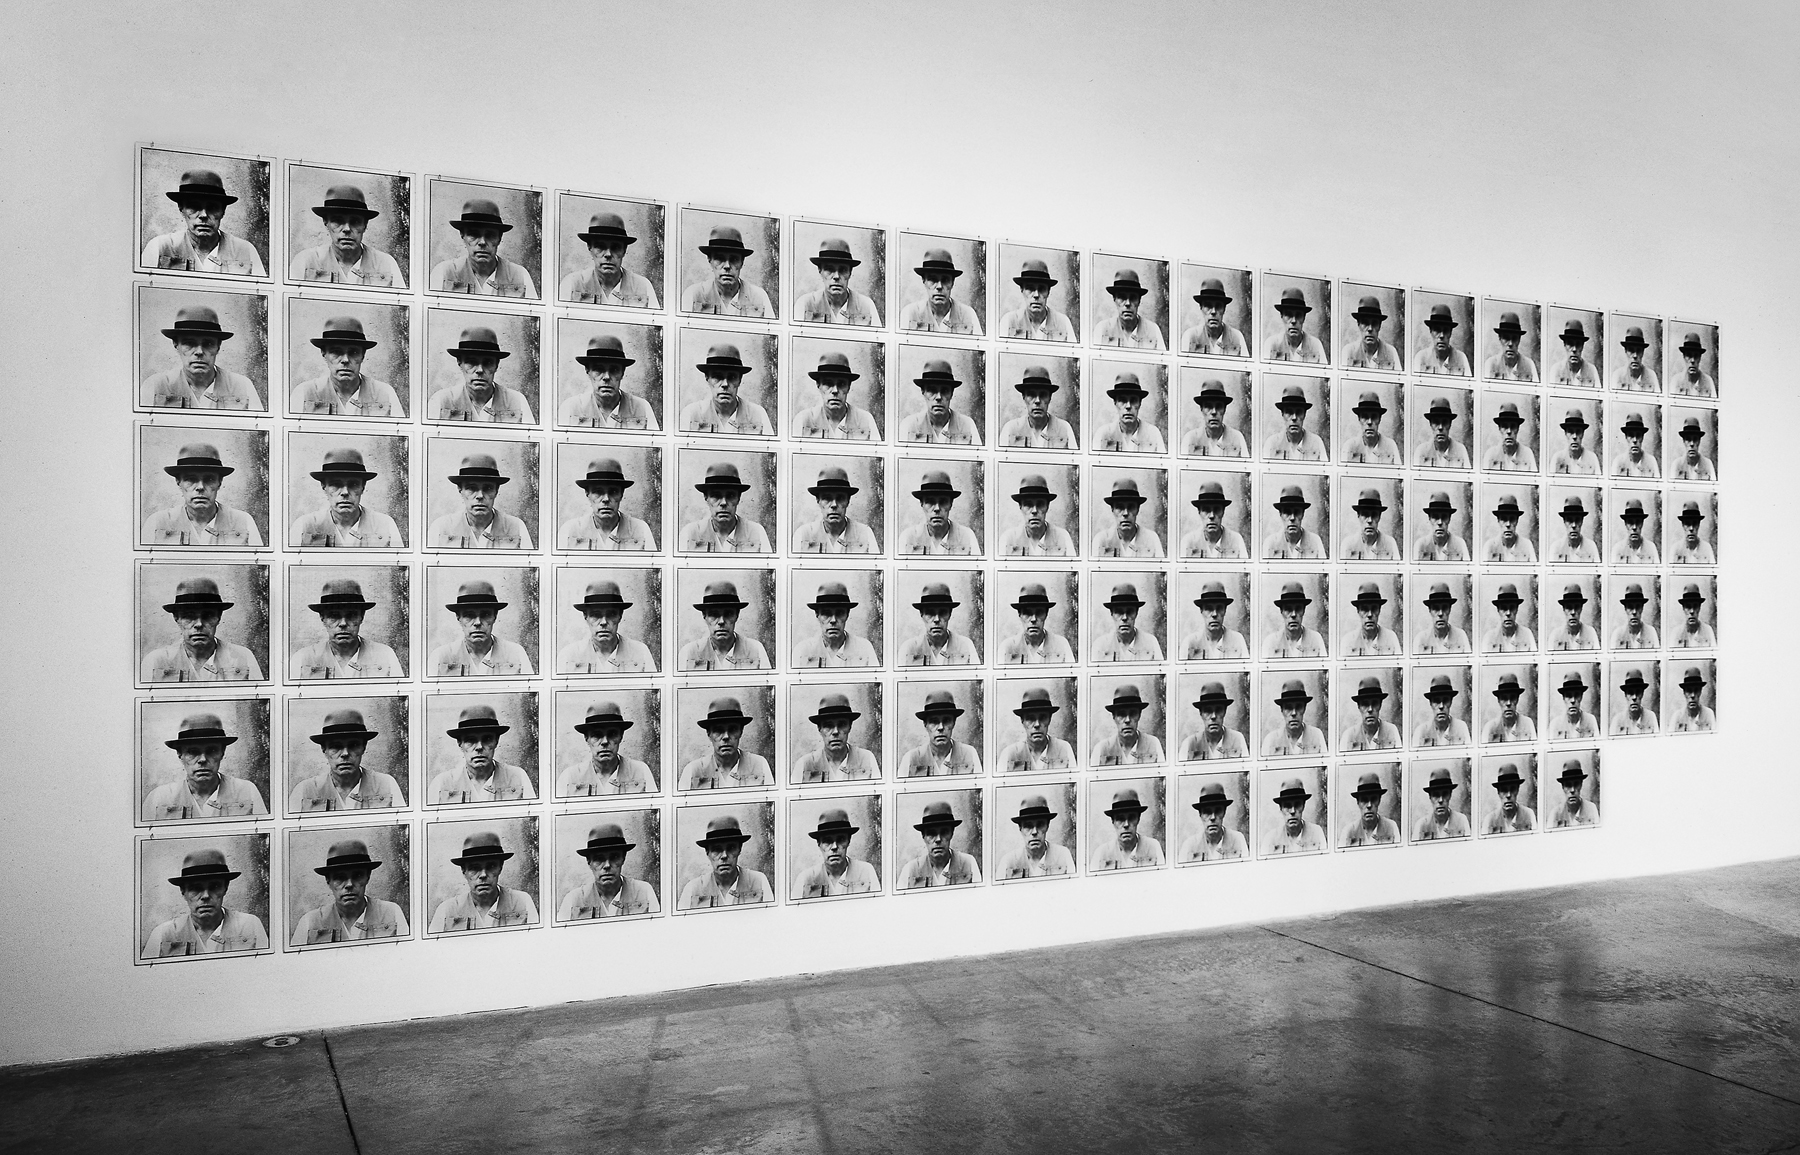 Joseph Beuys, 100 Frontal Views